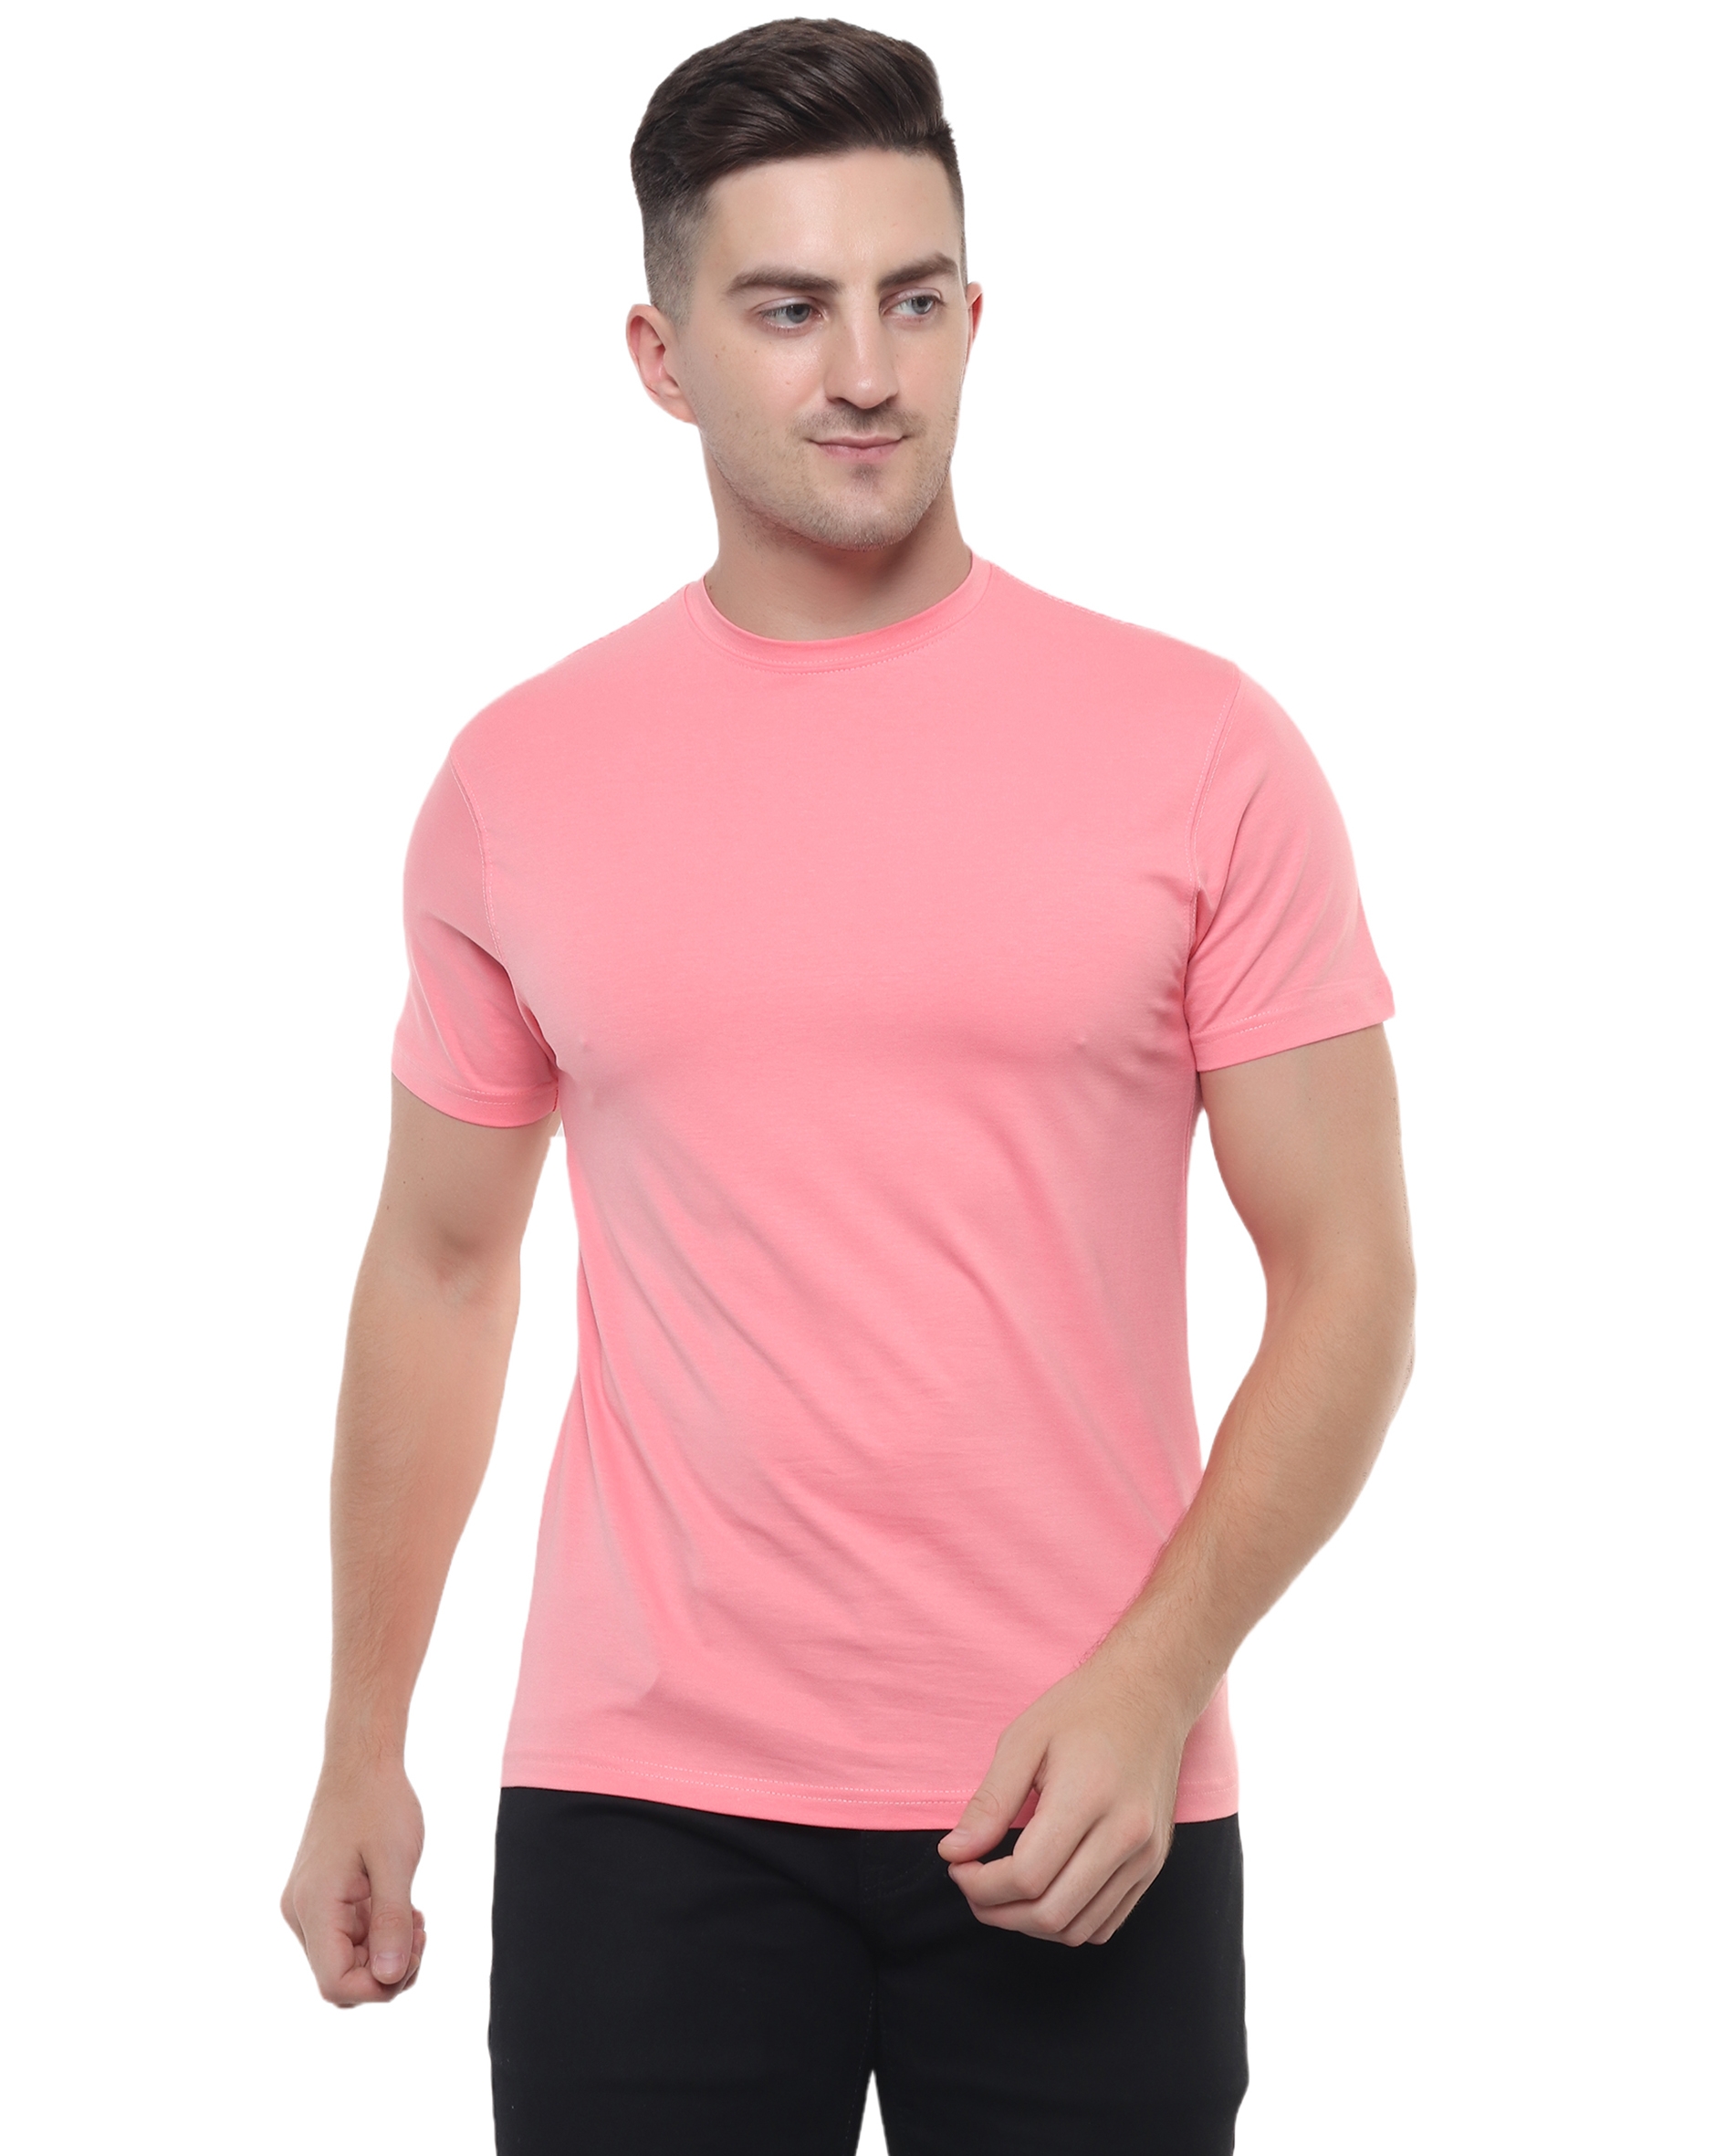 Peach Color Cotton Lycra T Shirt